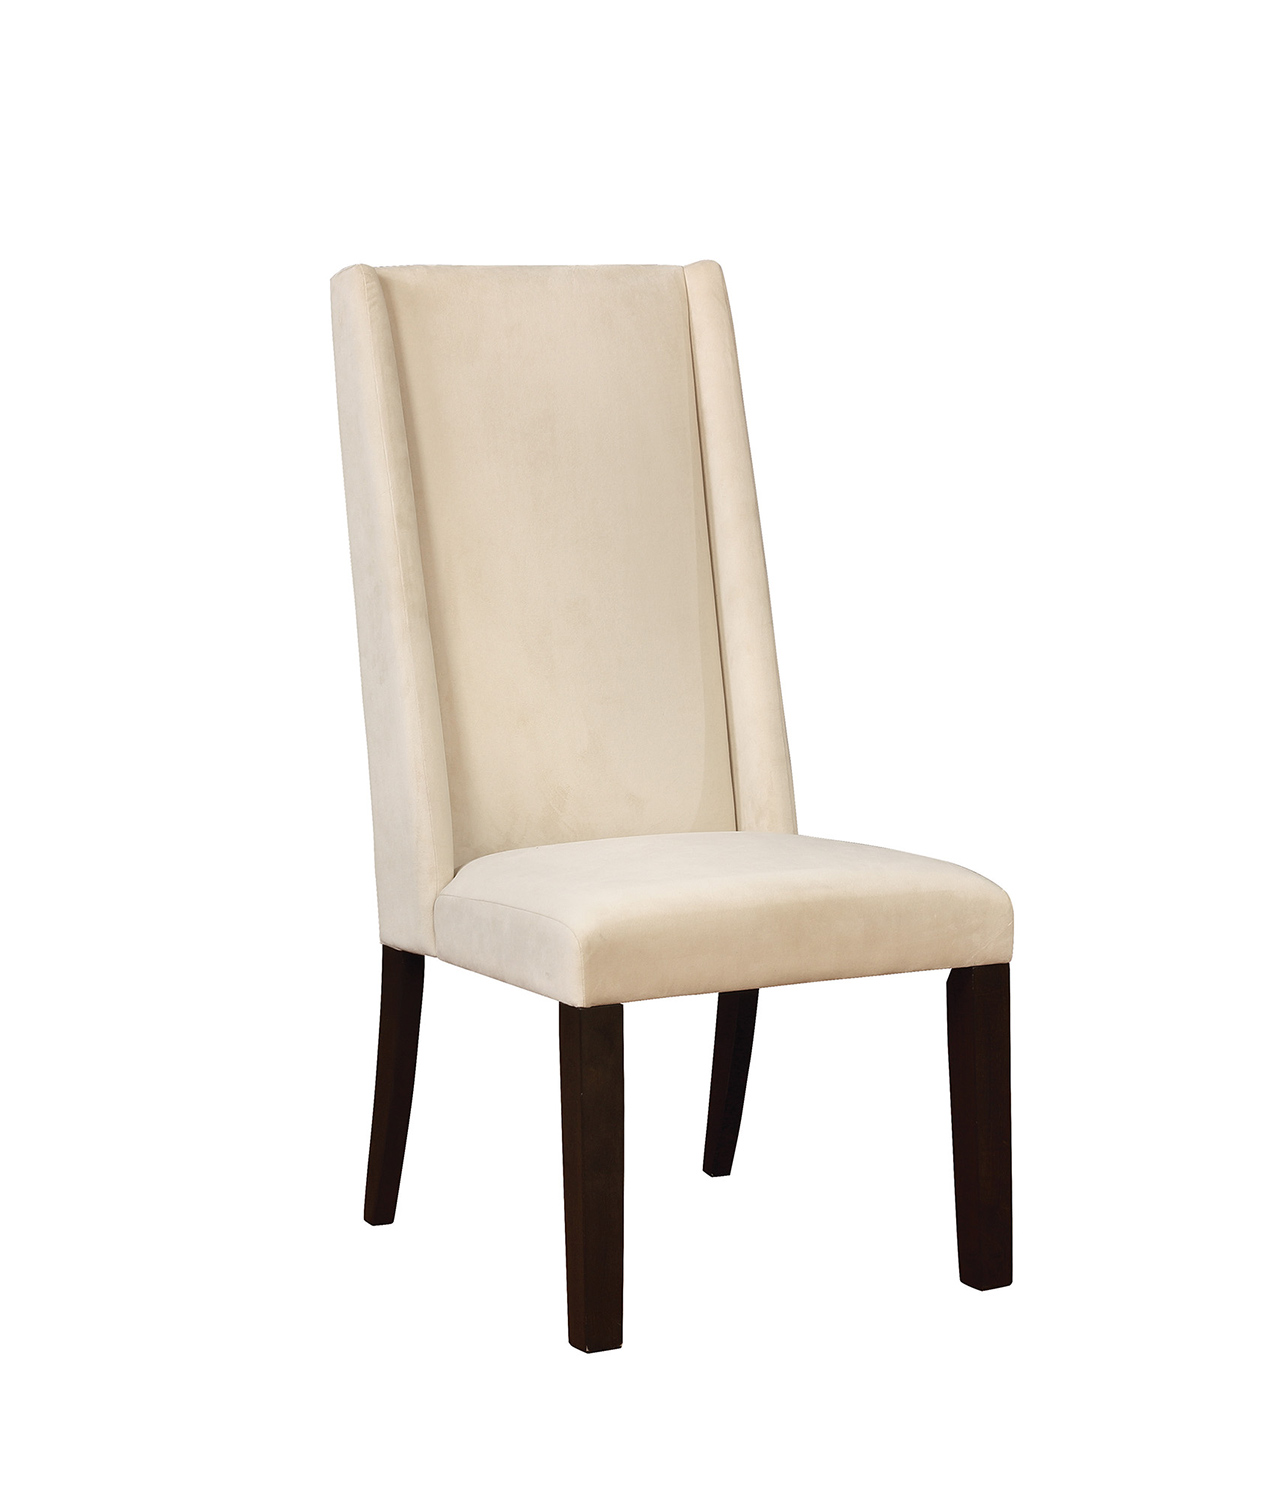 Coaster Hillsborough Parson Chair - Barley